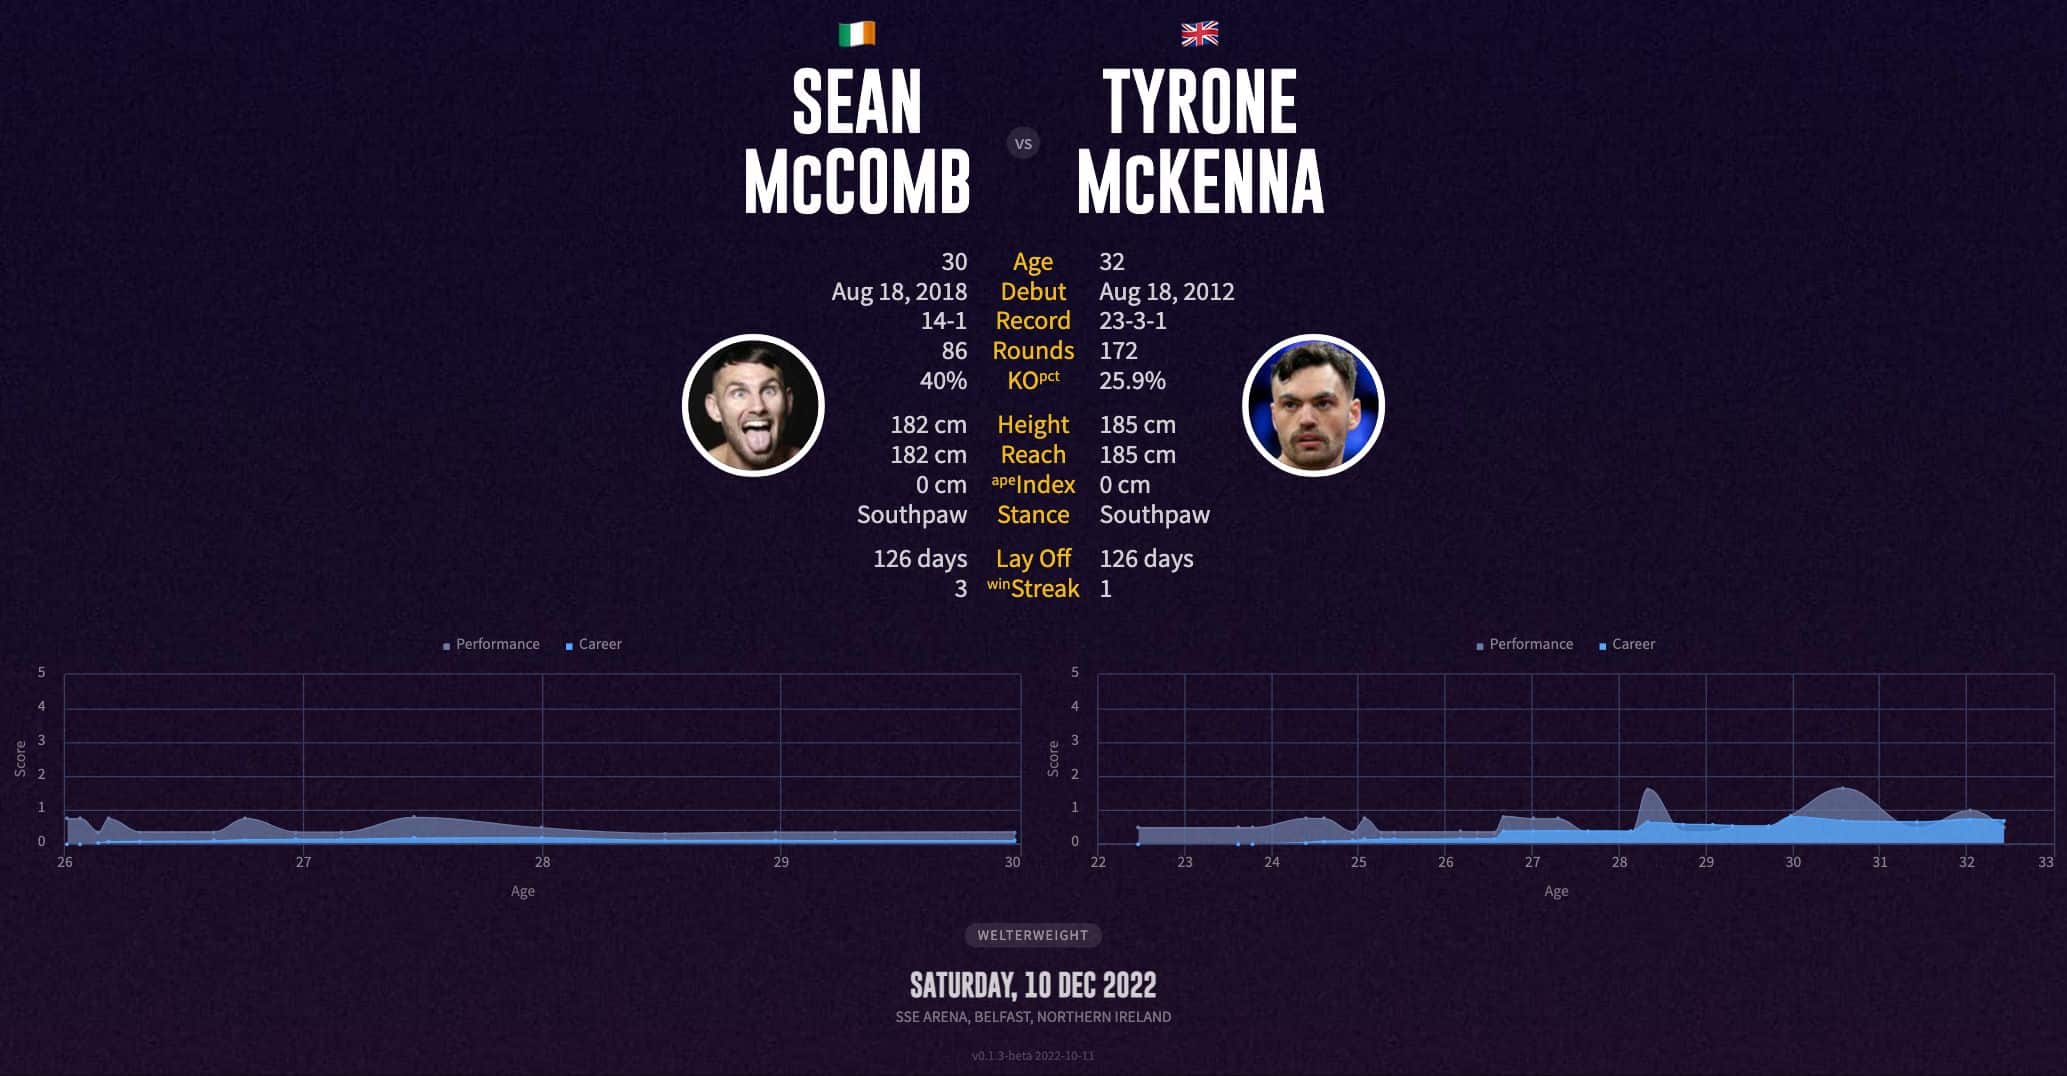 Tyrone McKenna's next fight